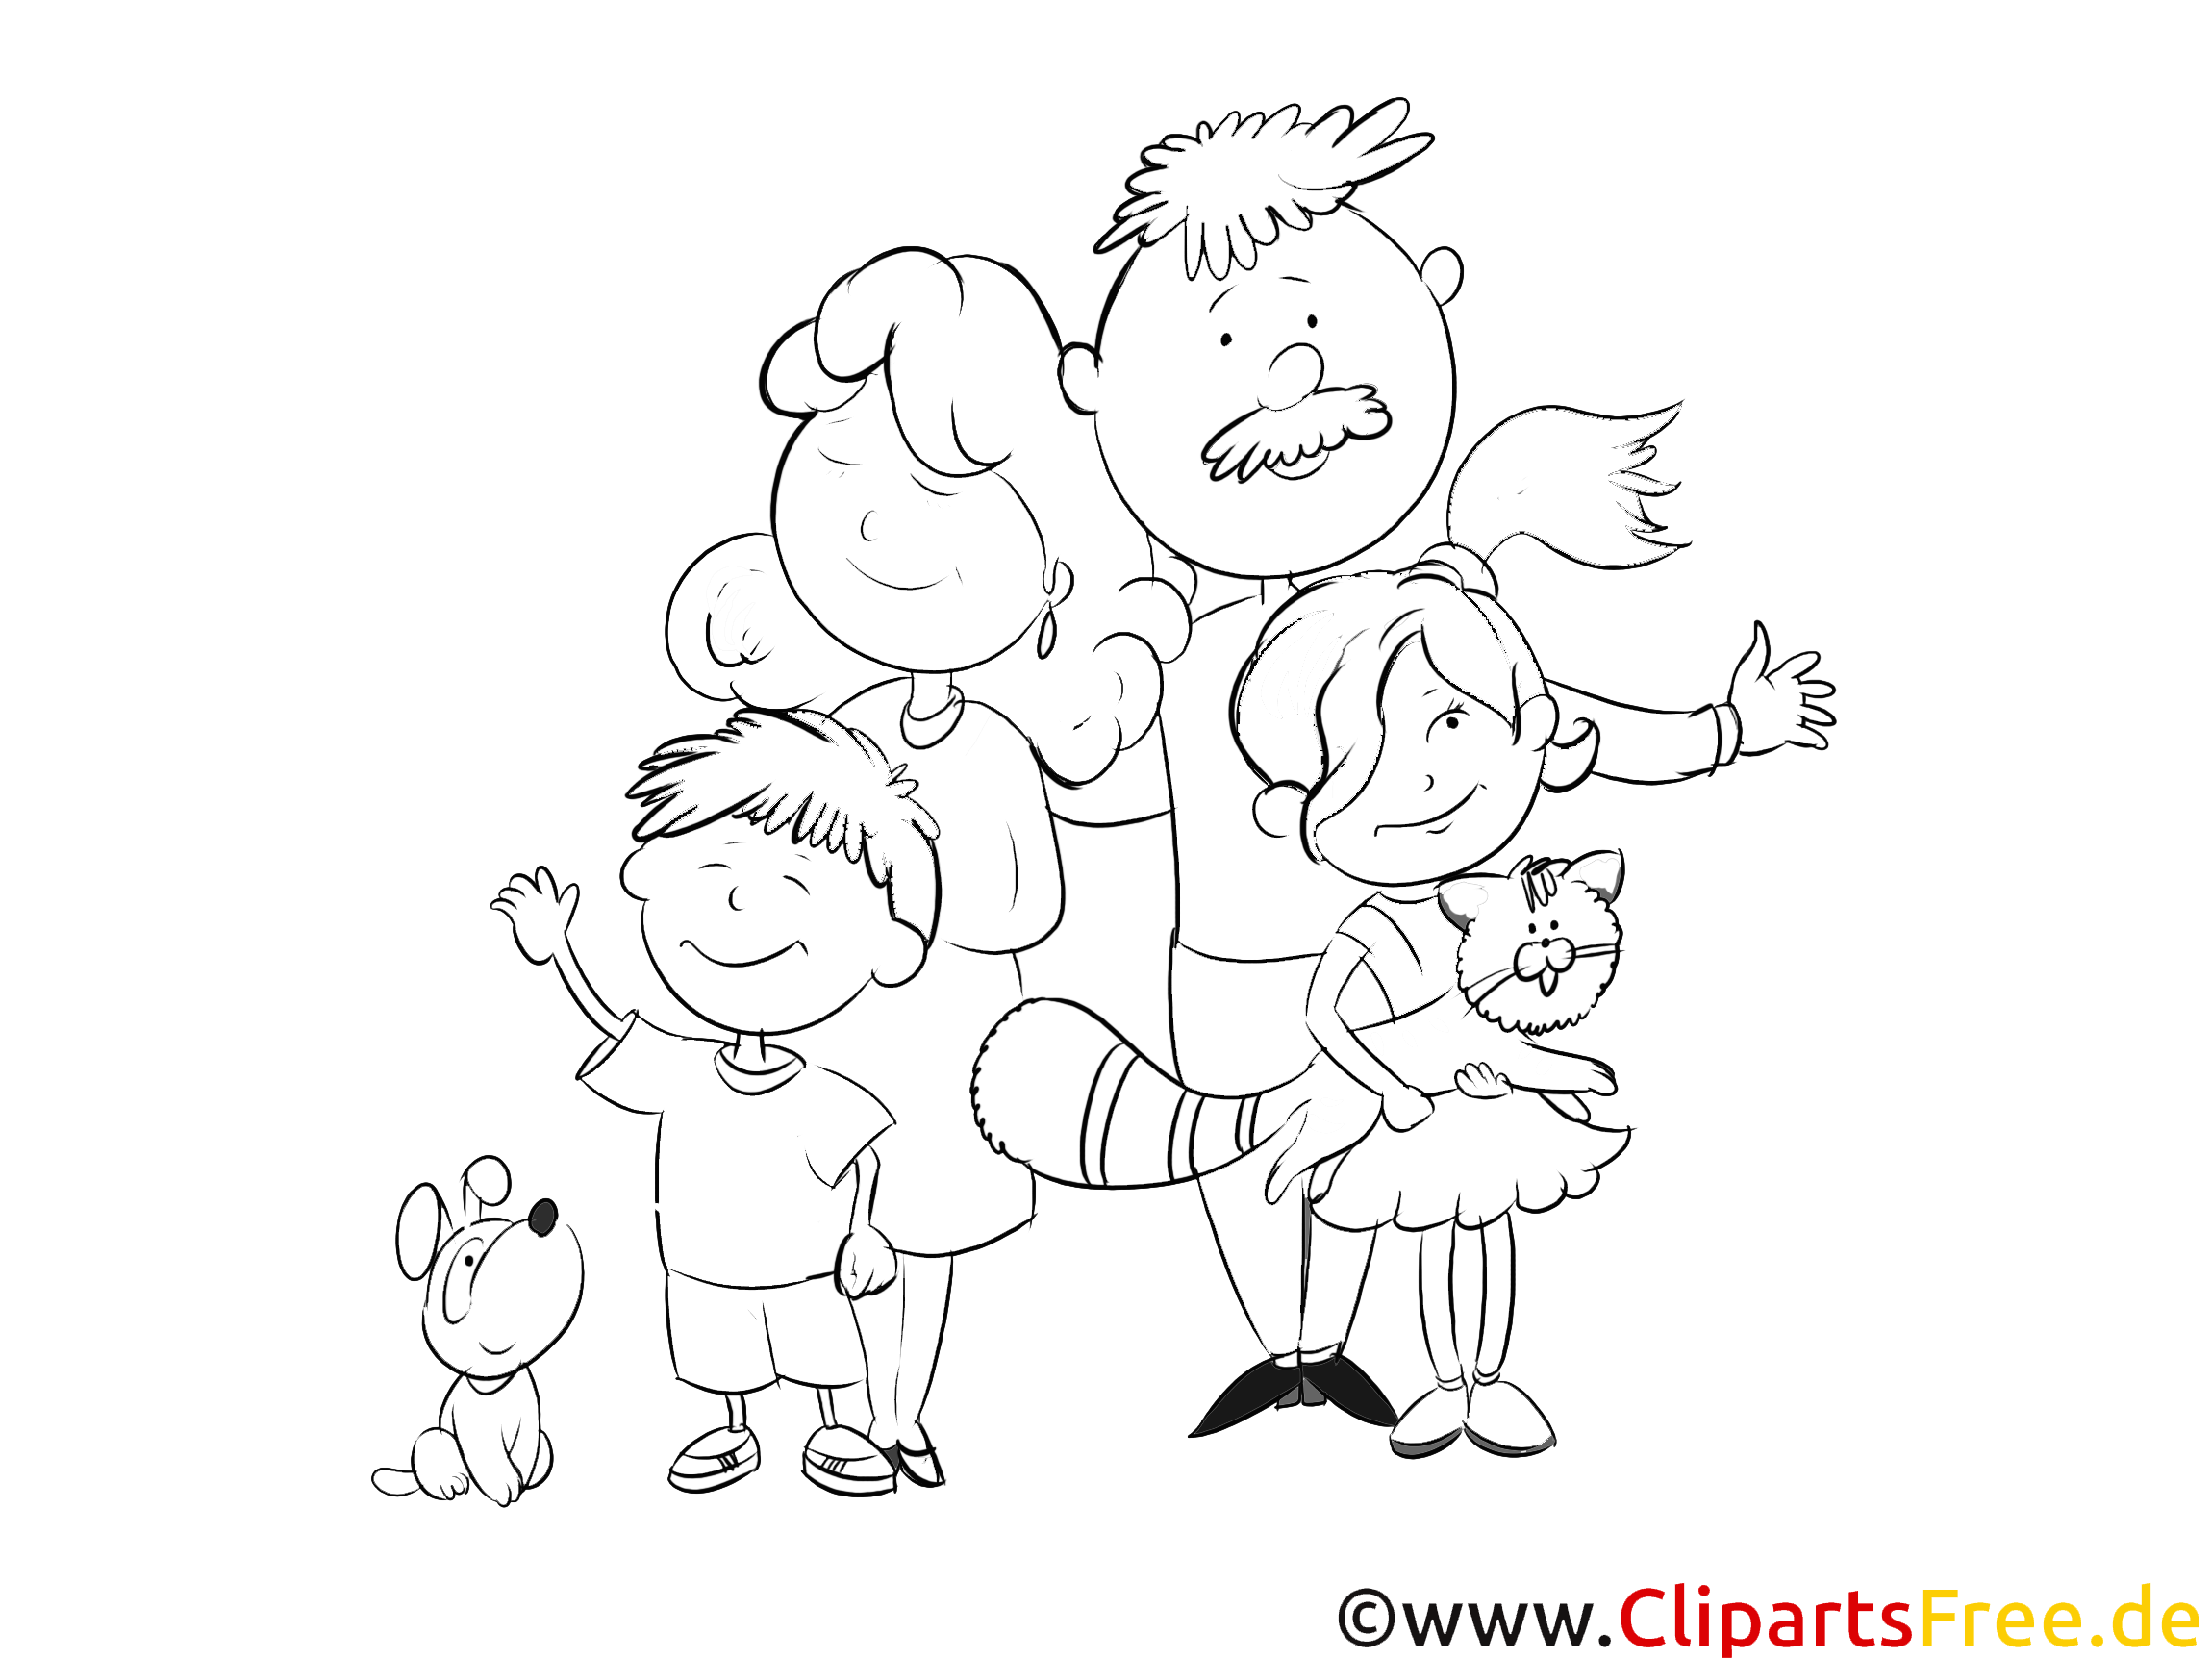 Familie Illustration - schwarz weiß Bilder gezeichnet zum Ausmalen